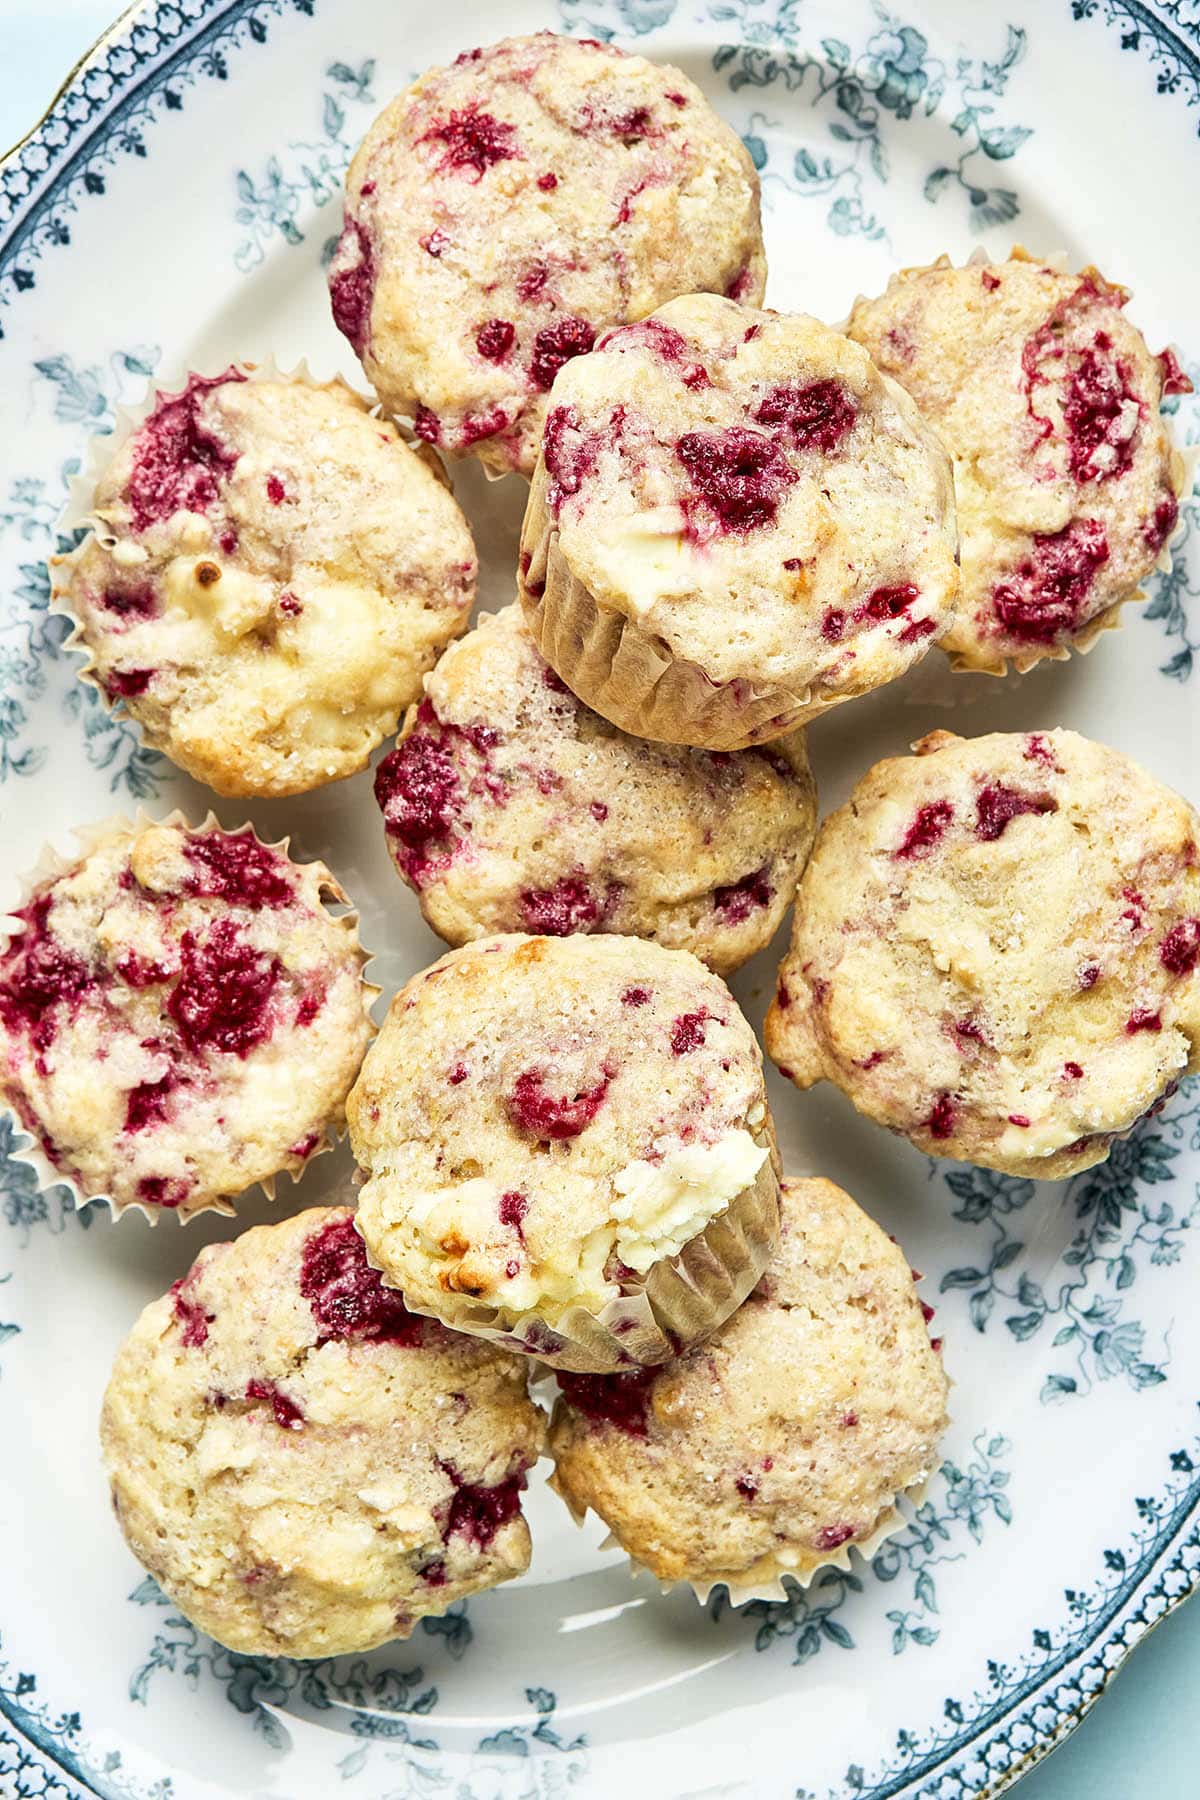 Lemon Raspberry Muffins With Cream Cheese